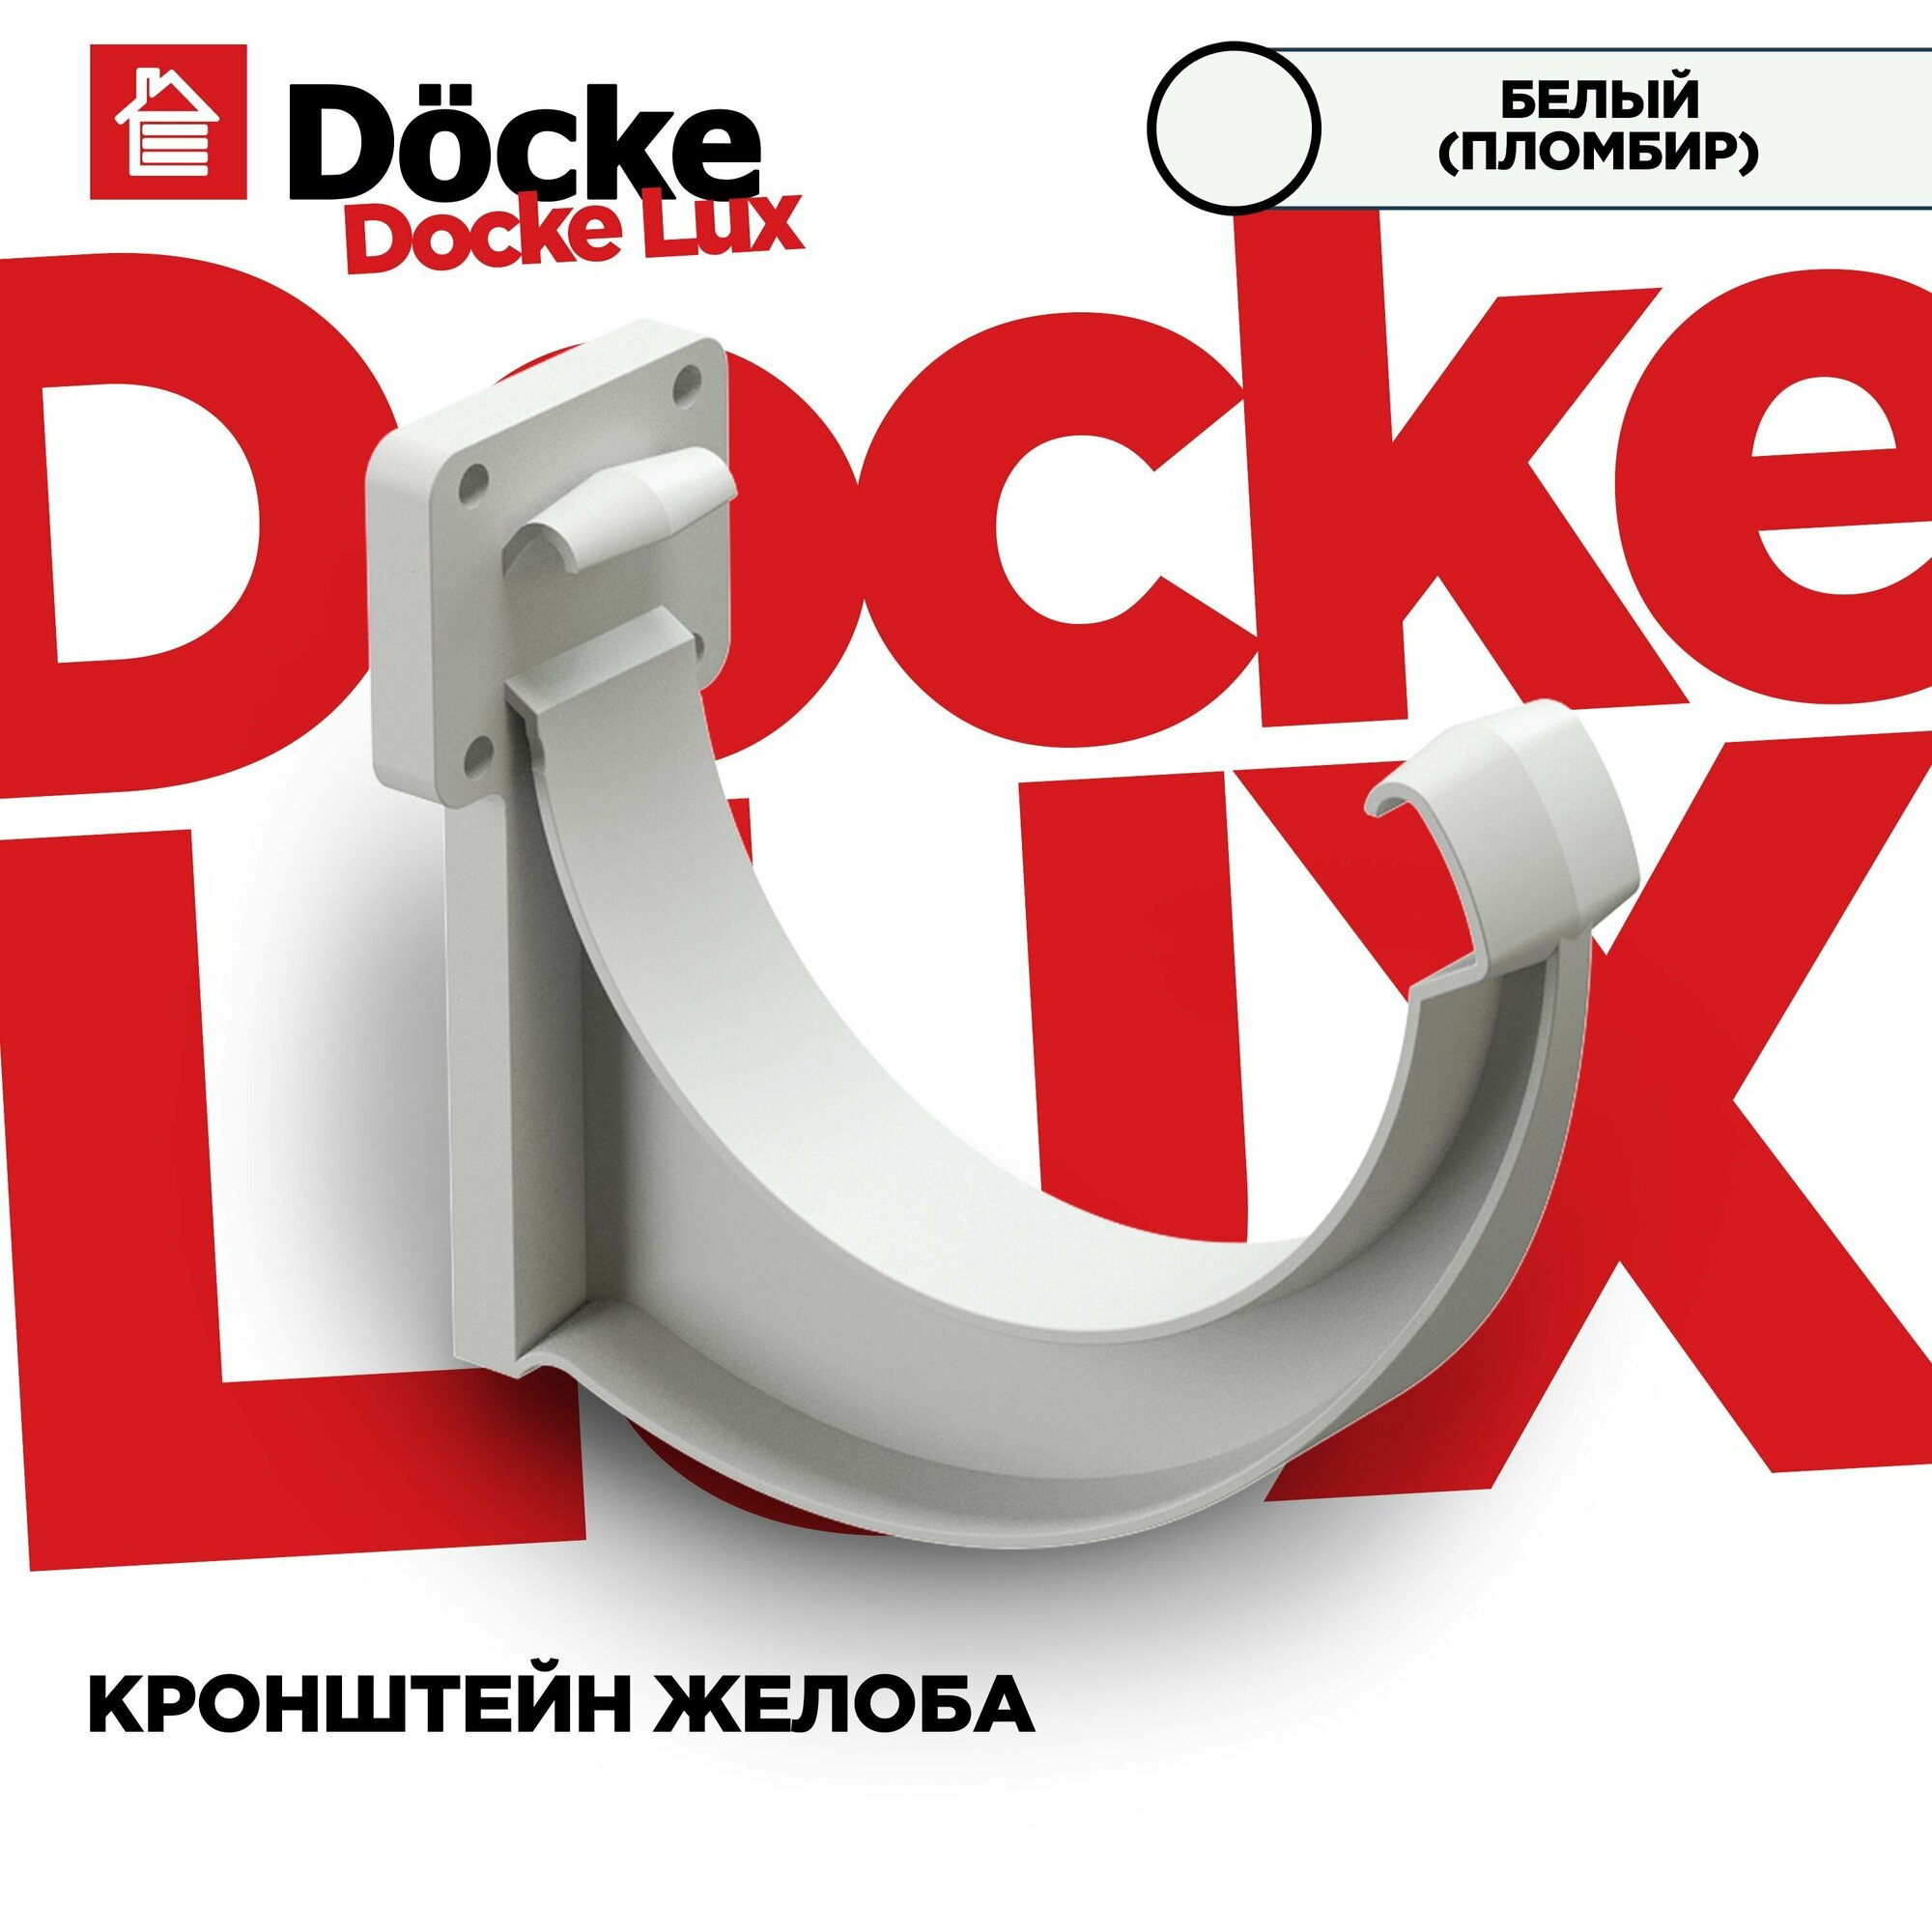 Кронштейн(Крюк) для желоба LUX водосточной системы docke цвет Пломбир (Белый). 3 штуки в комплекте